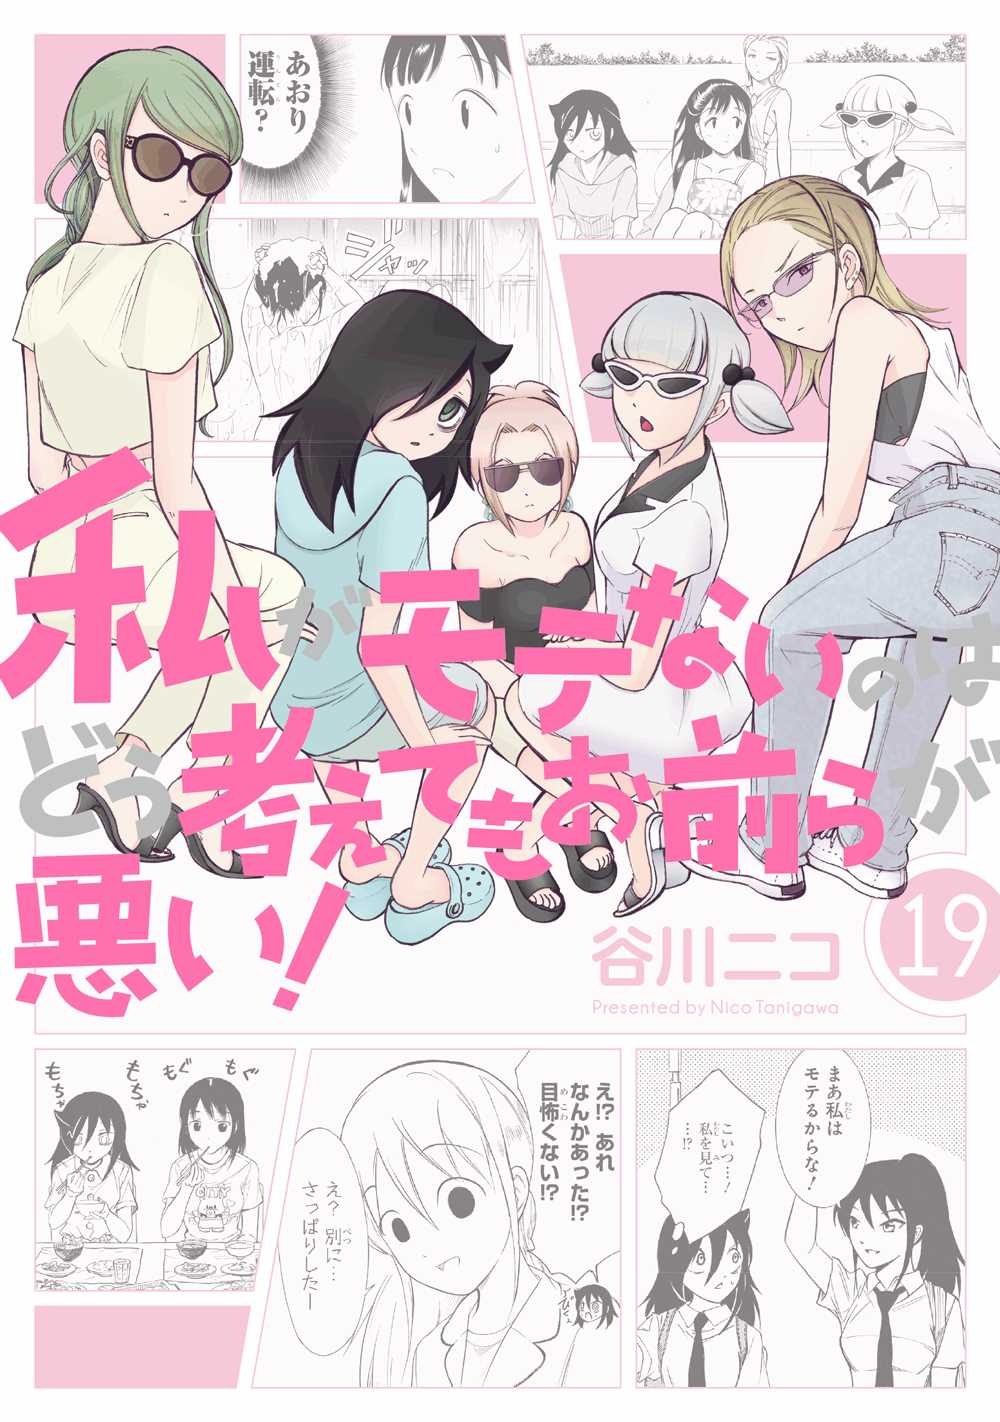 クズとメガネと文学少女 偽 谷川ニコの漫画 コミック Tsutaya ツタヤ